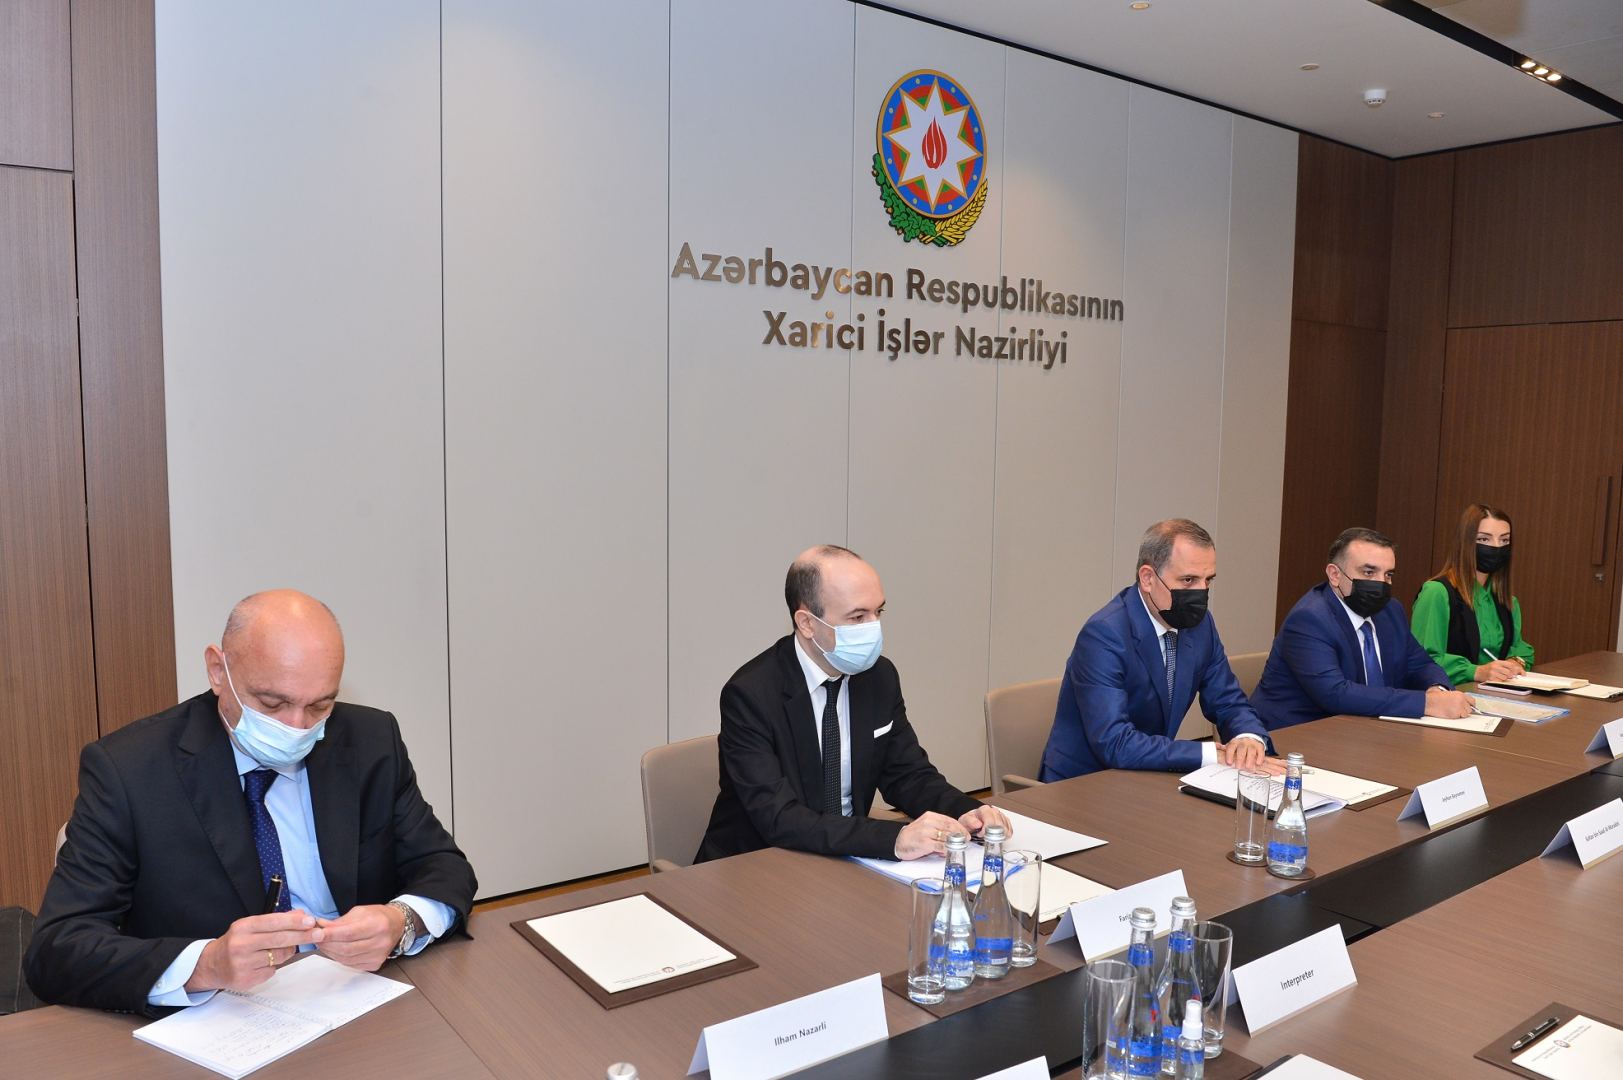 Azerbaijan ready to normalize relations with Armenia - FM (PHOTO)